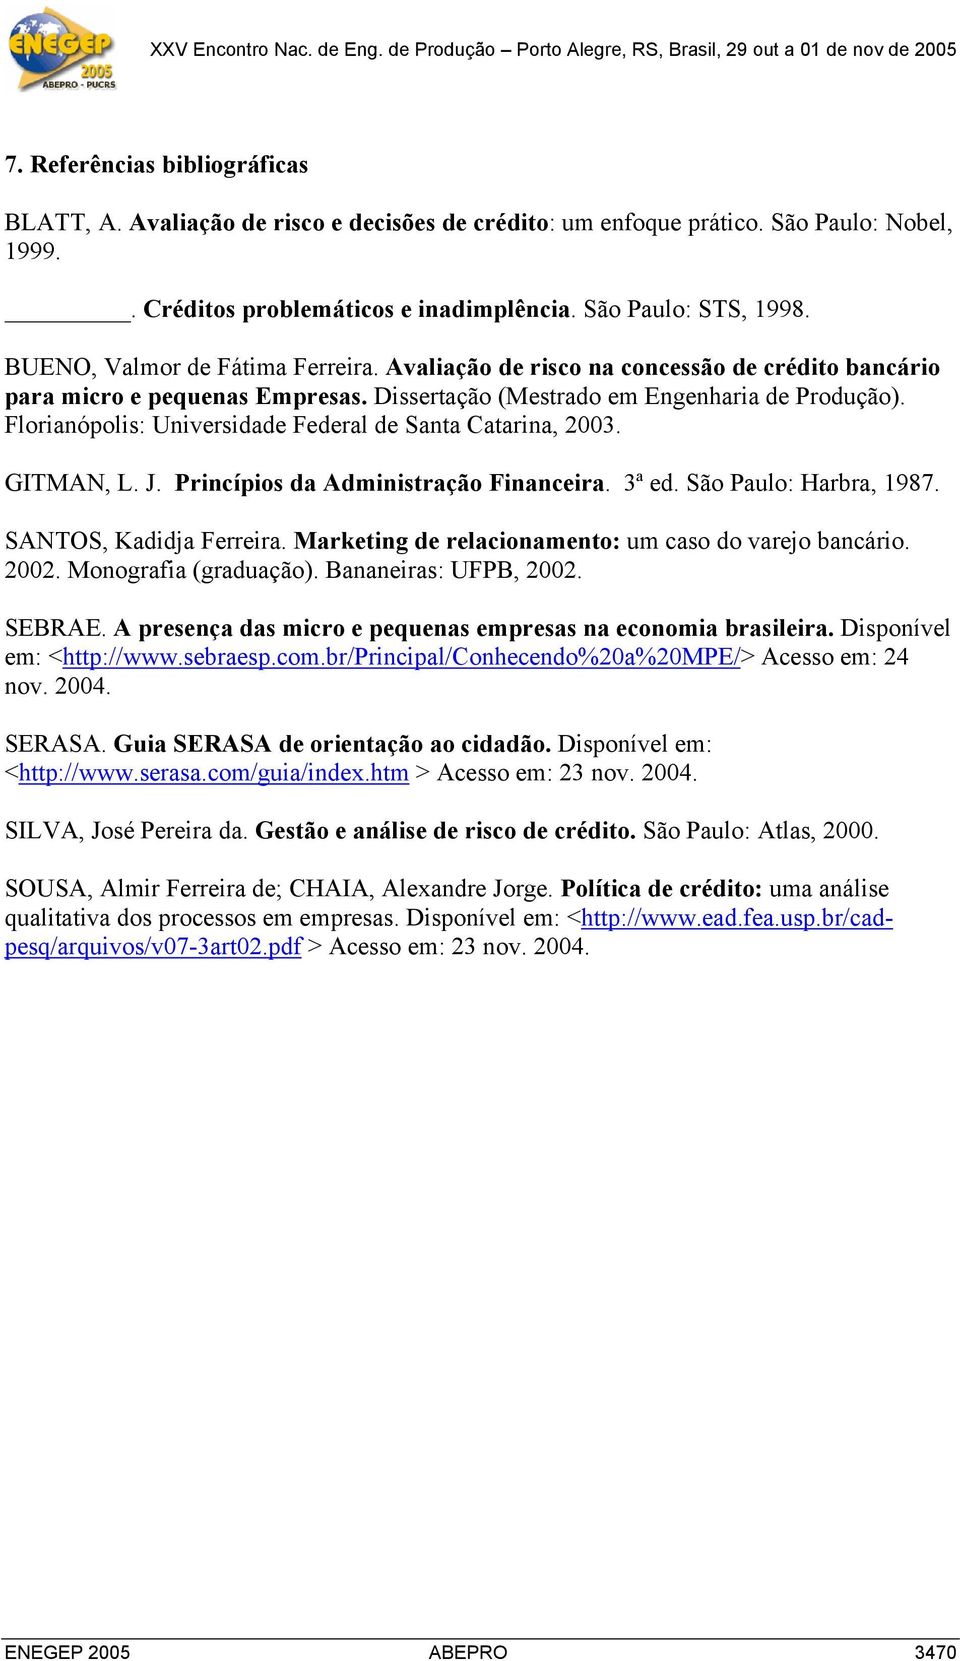 Florianópolis: Universidade Federal de Santa Catarina, 2003. GITMAN, L. J. Princípios da Administração Financeira. 3ª ed. São Paulo: Harbra, 1987. SANTOS, Kadidja Ferreira.